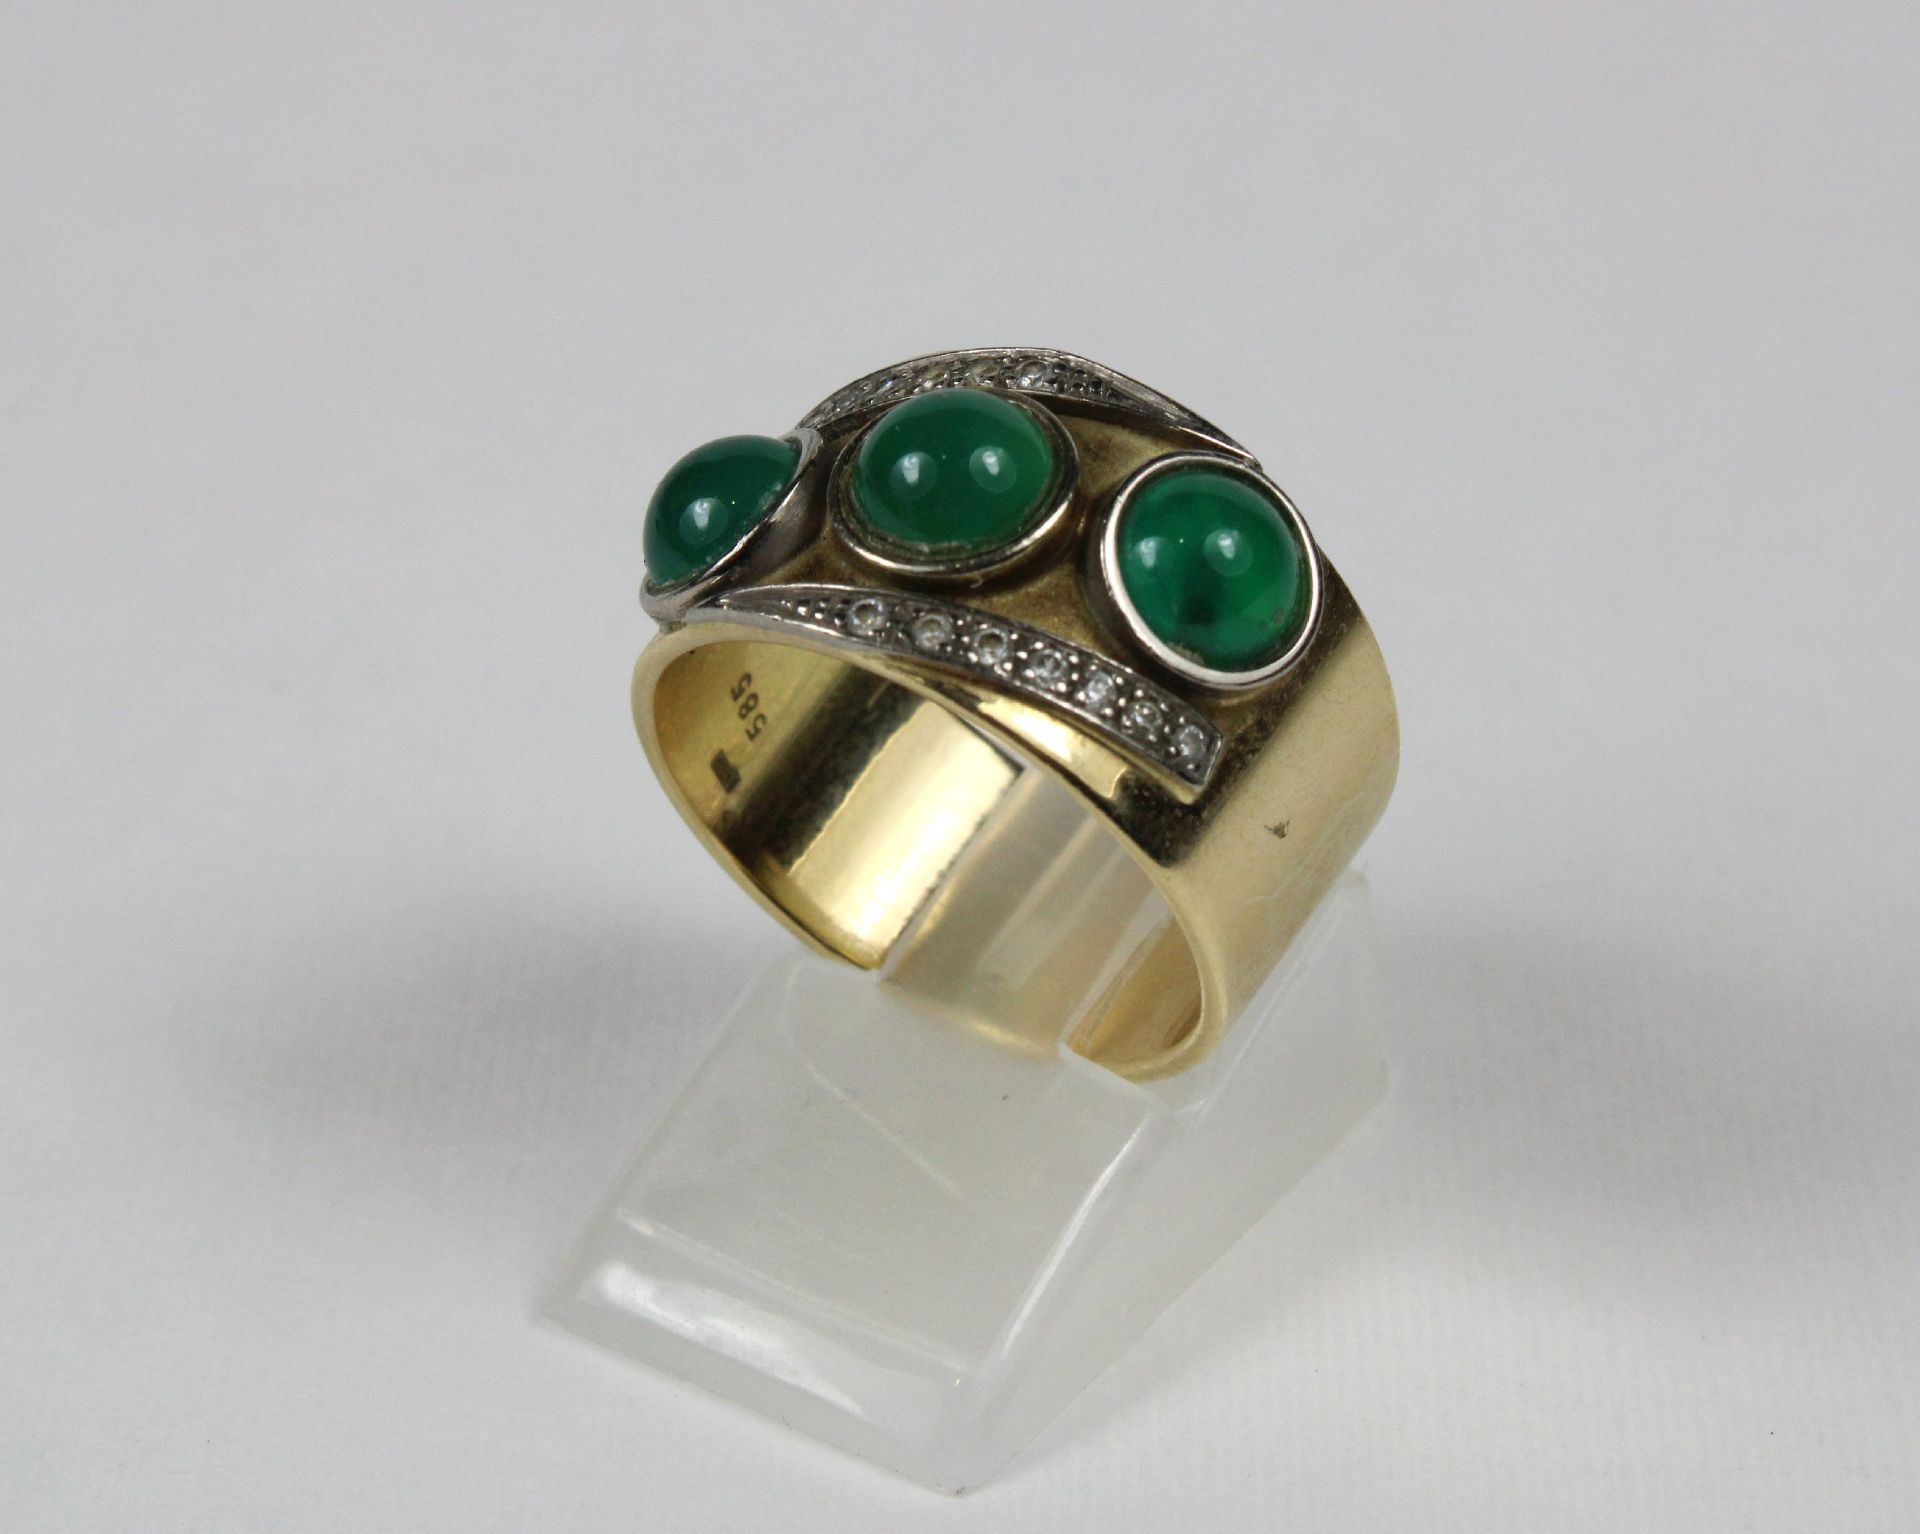 Ring mit Smaragden, 585er Gold, 3 Smaragden zusammen ca. 1,4 ct., Ringgröße: 60, Gesamtgewicht: 9,83 - Image 2 of 2